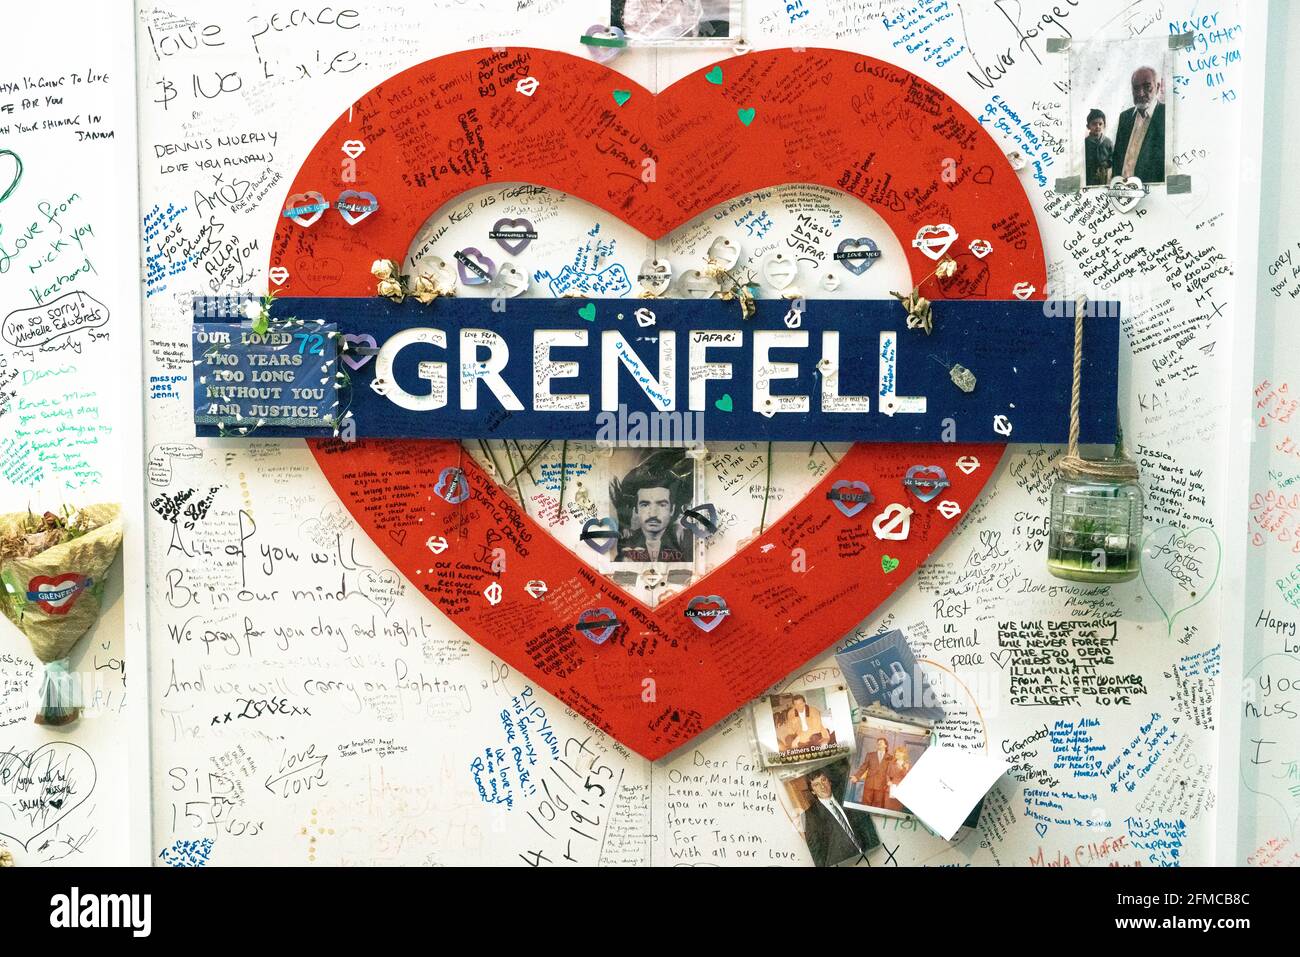 Messaggi di condoglianze scritti intorno ad un cuore rosso commemorativo a Grenfell Tower, West London. Illustrazione. Foto Stock